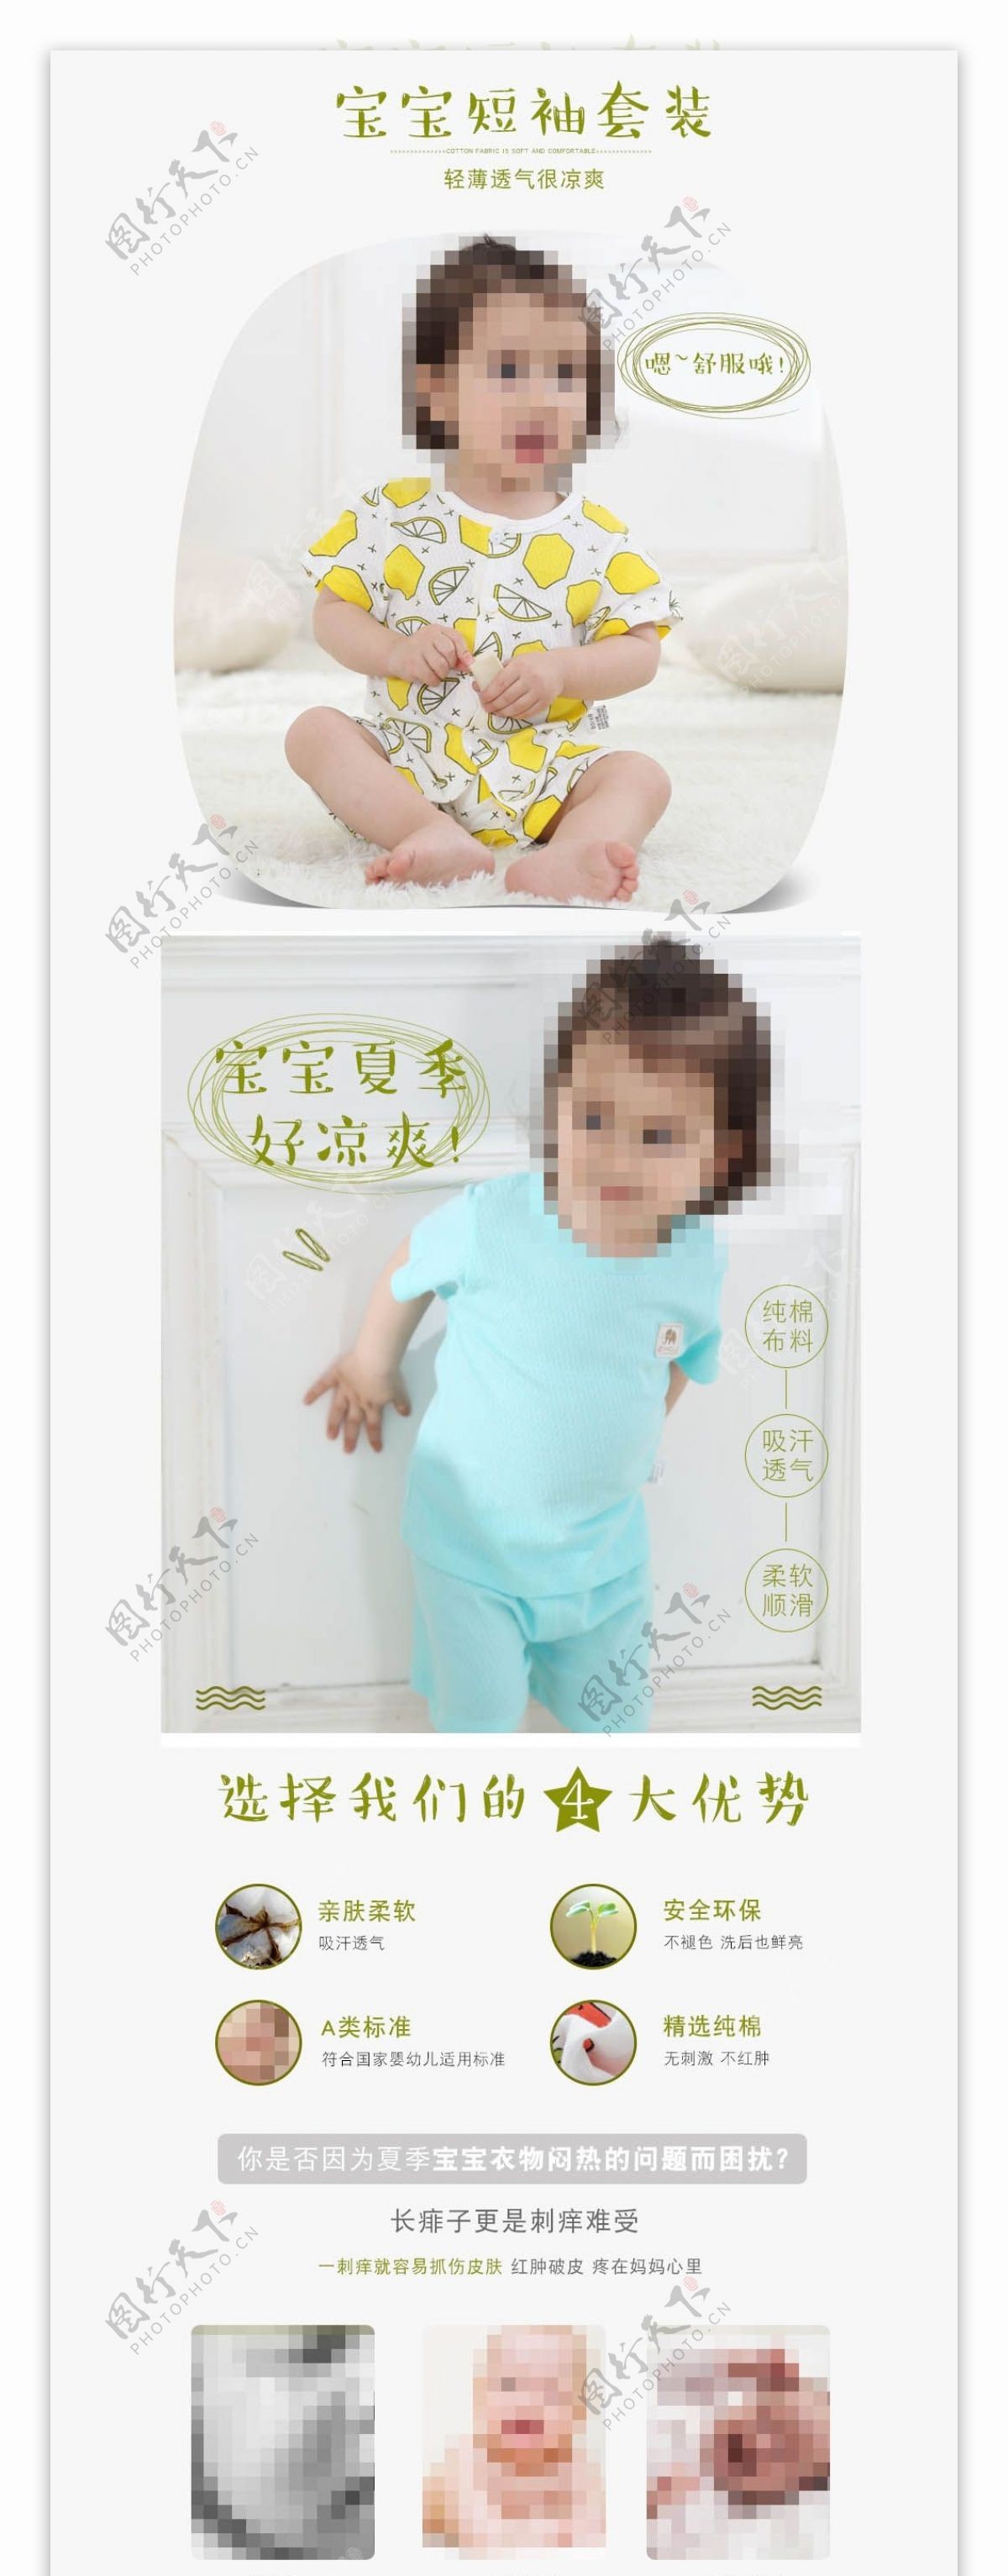 电商婴儿装可爱简约风790详情psd模板